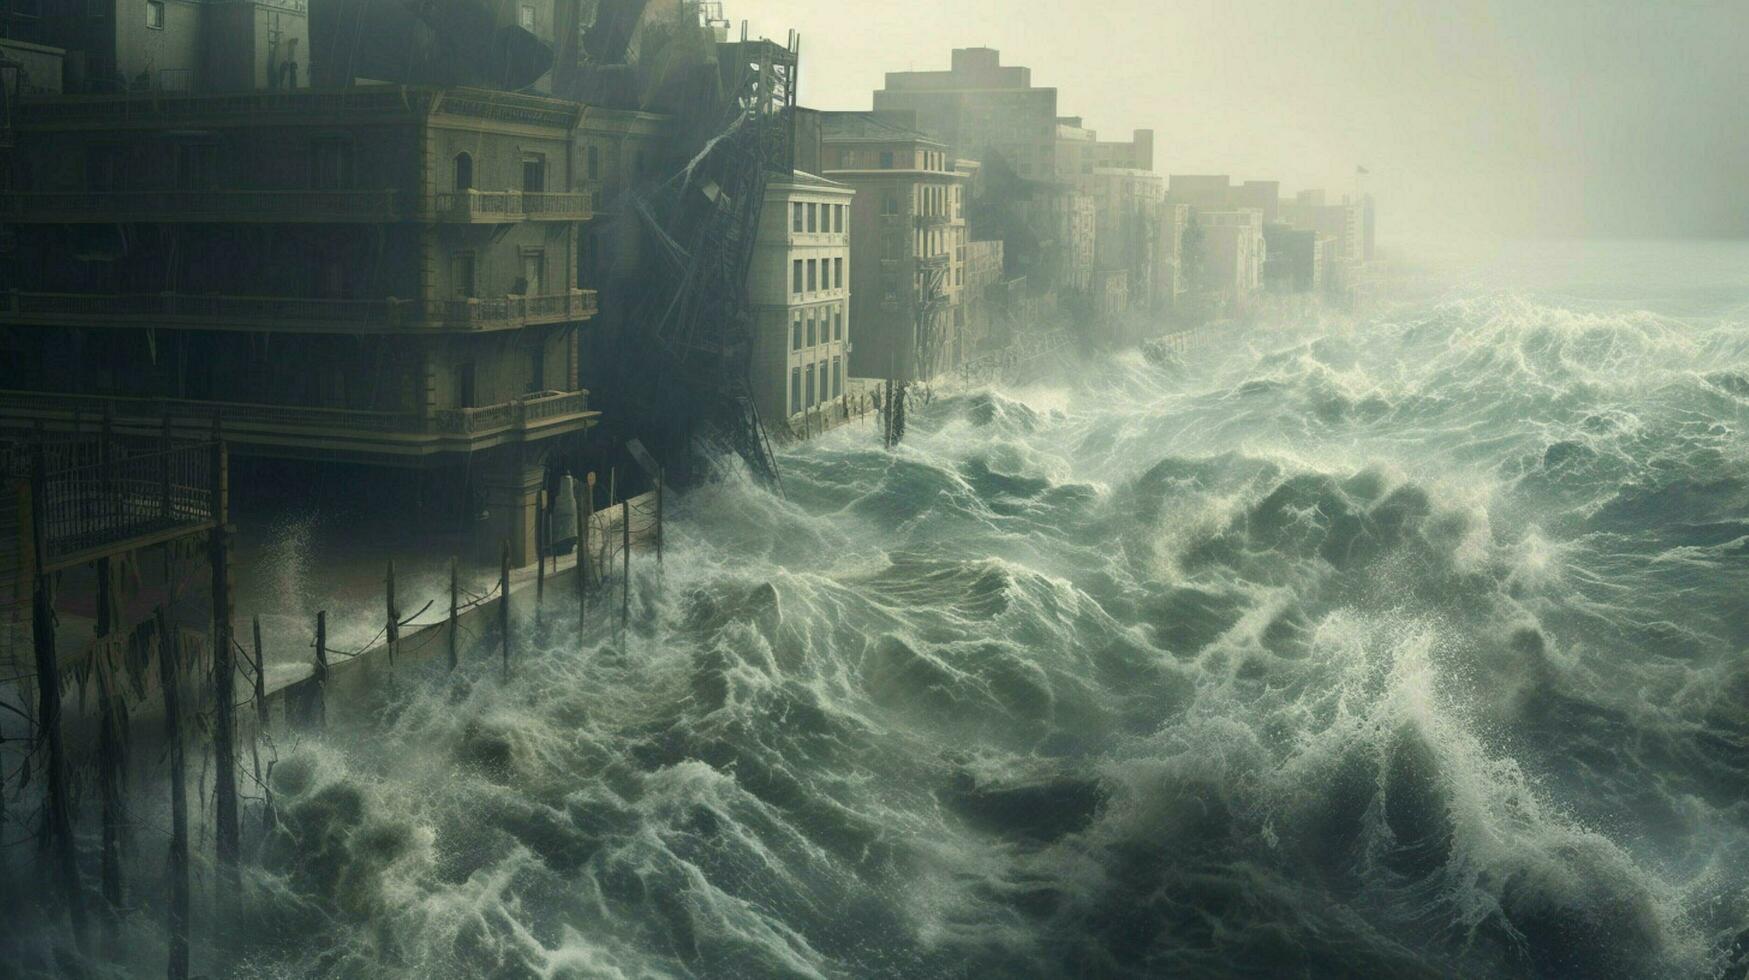 des murs de l'eau en hausse de le océan à dévaster photo